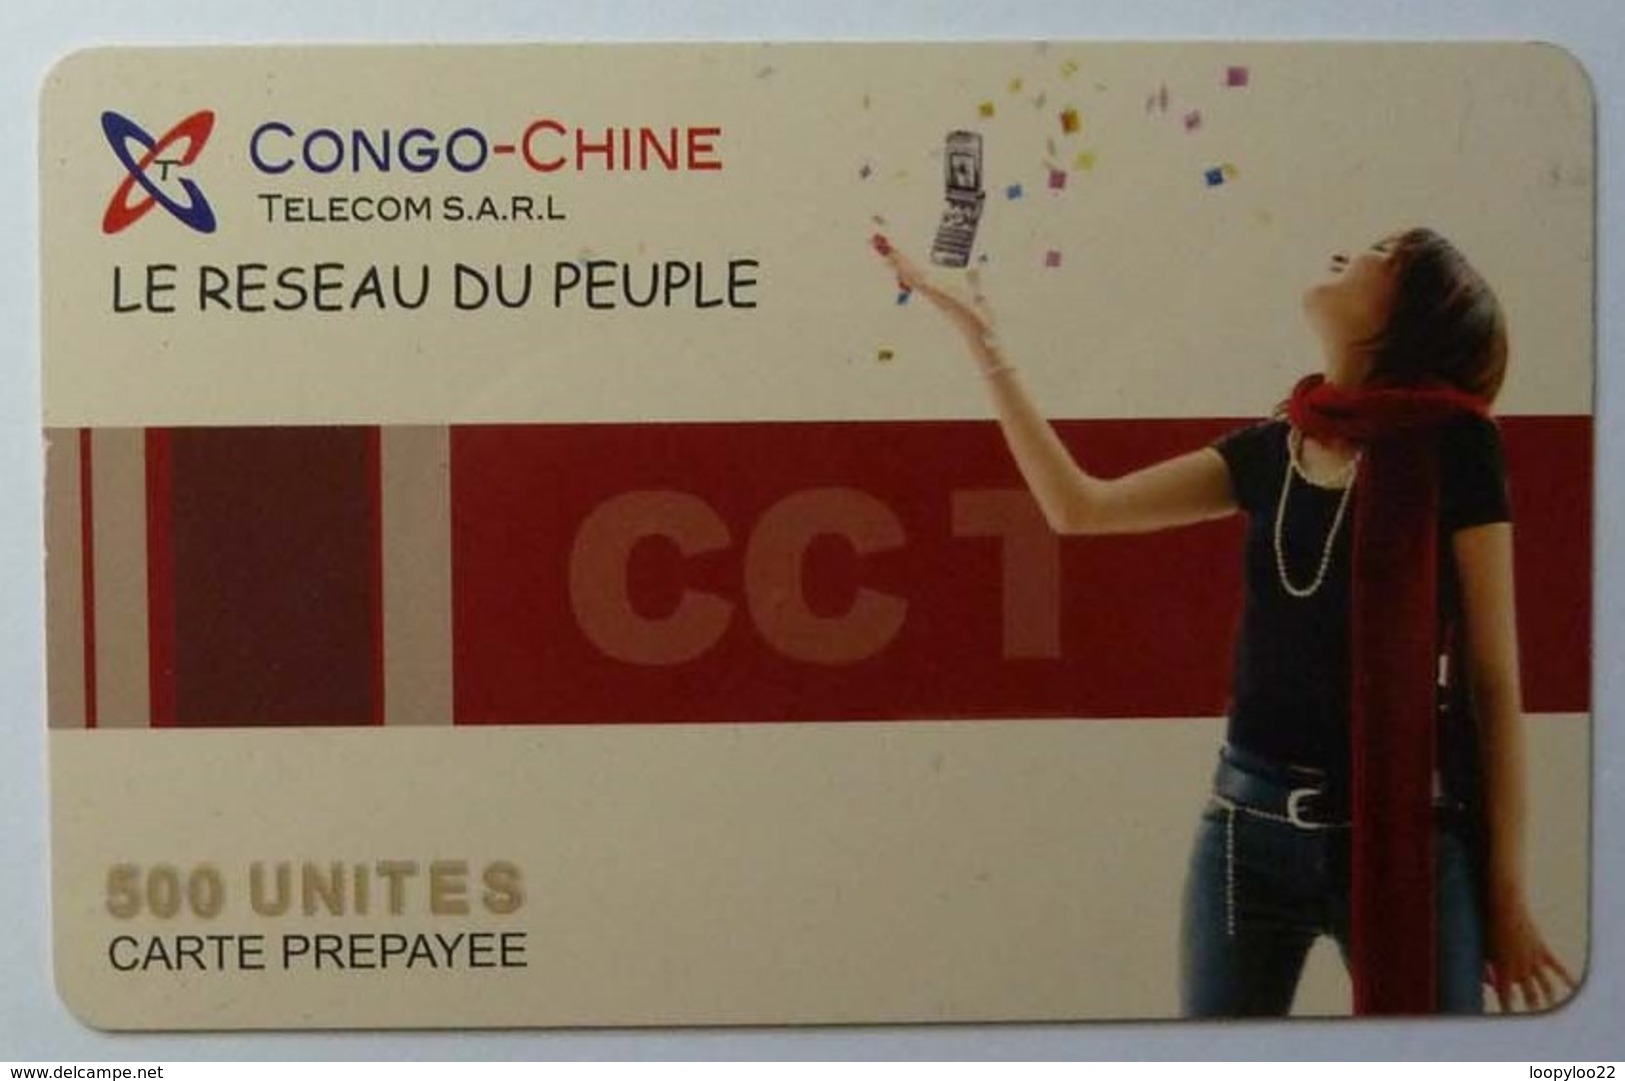 CONGO - Chine Telecom - Prepaid - Le Reseau Du Peuple - 500 Units - 31.12.04 - Used - Congo